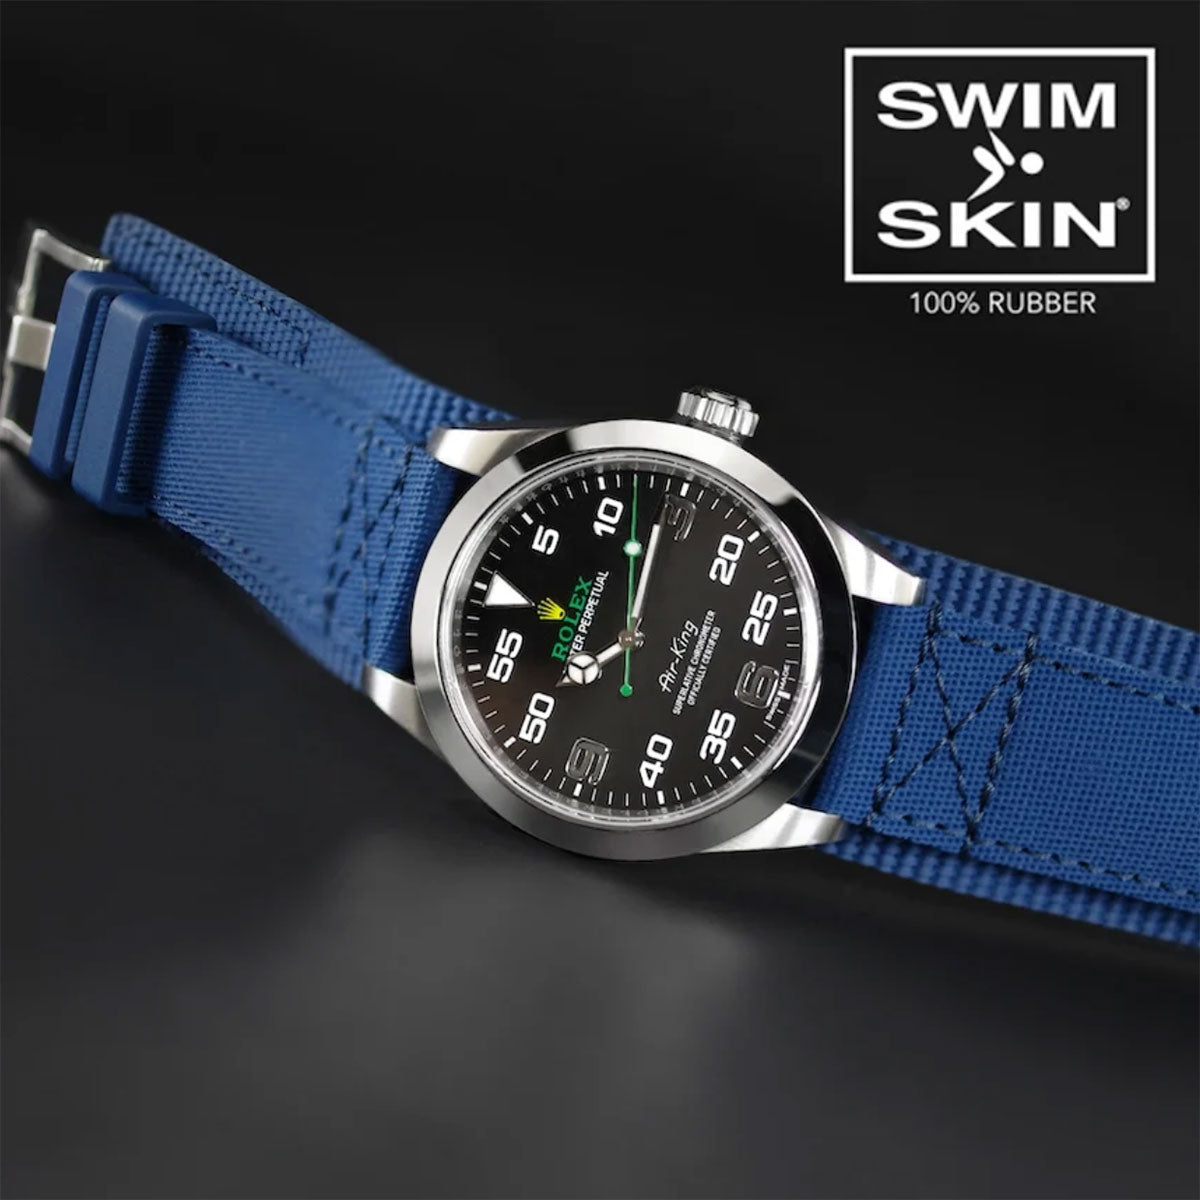 Rolex - Rubber B - Bracelet caoutchouc pour Air-King 40mm - Série Bund - watch band leather strap - ABP Concept -